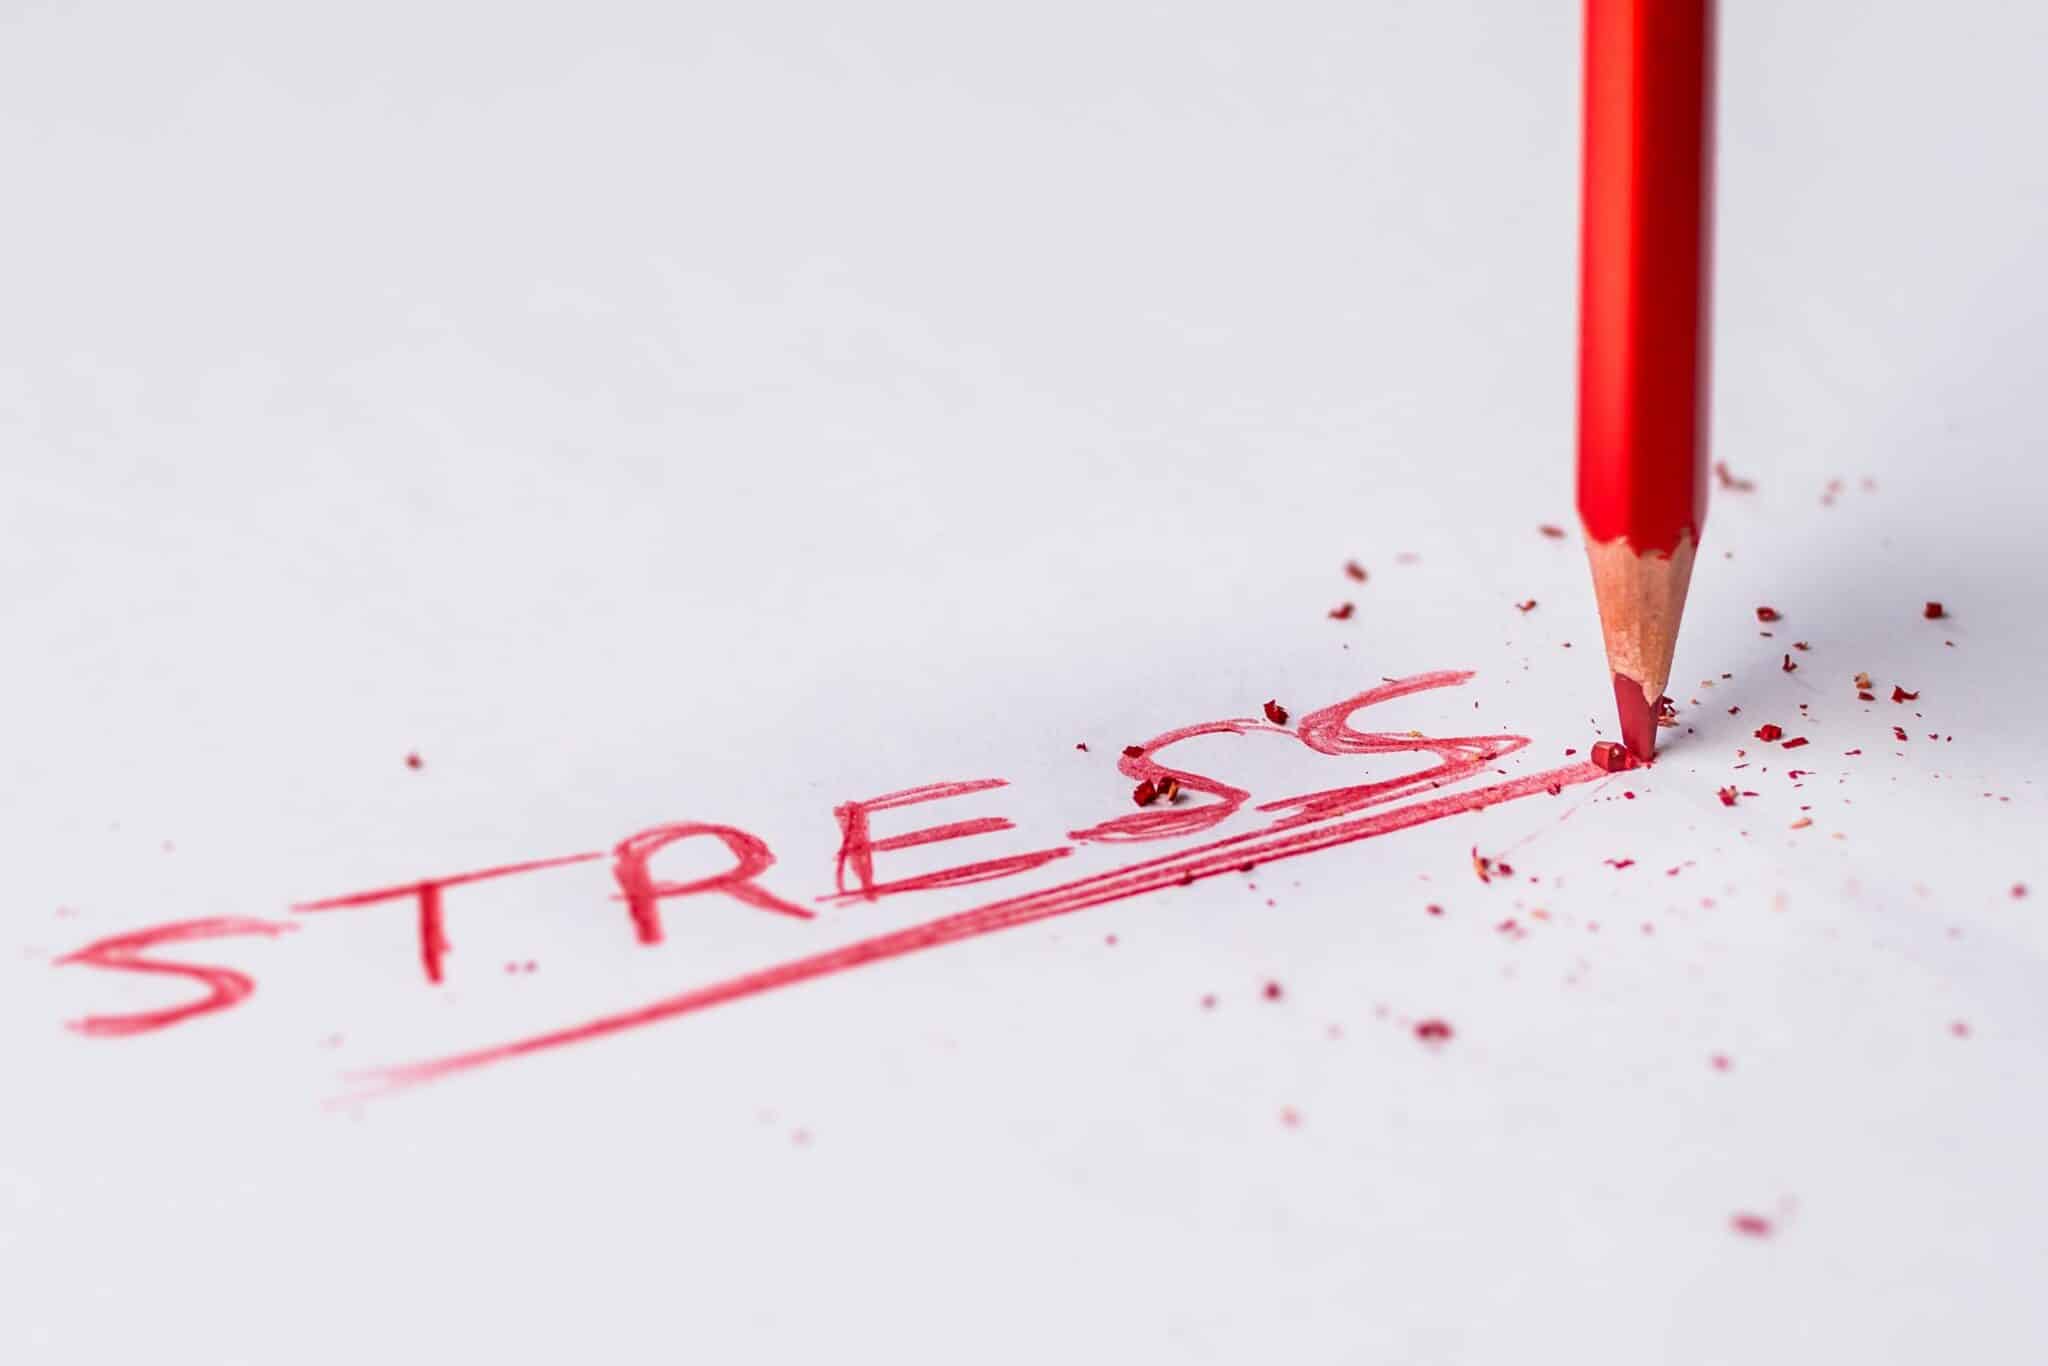 วิธีใดในการจัดการกับความเครียดได้ผลดีที่สุด?